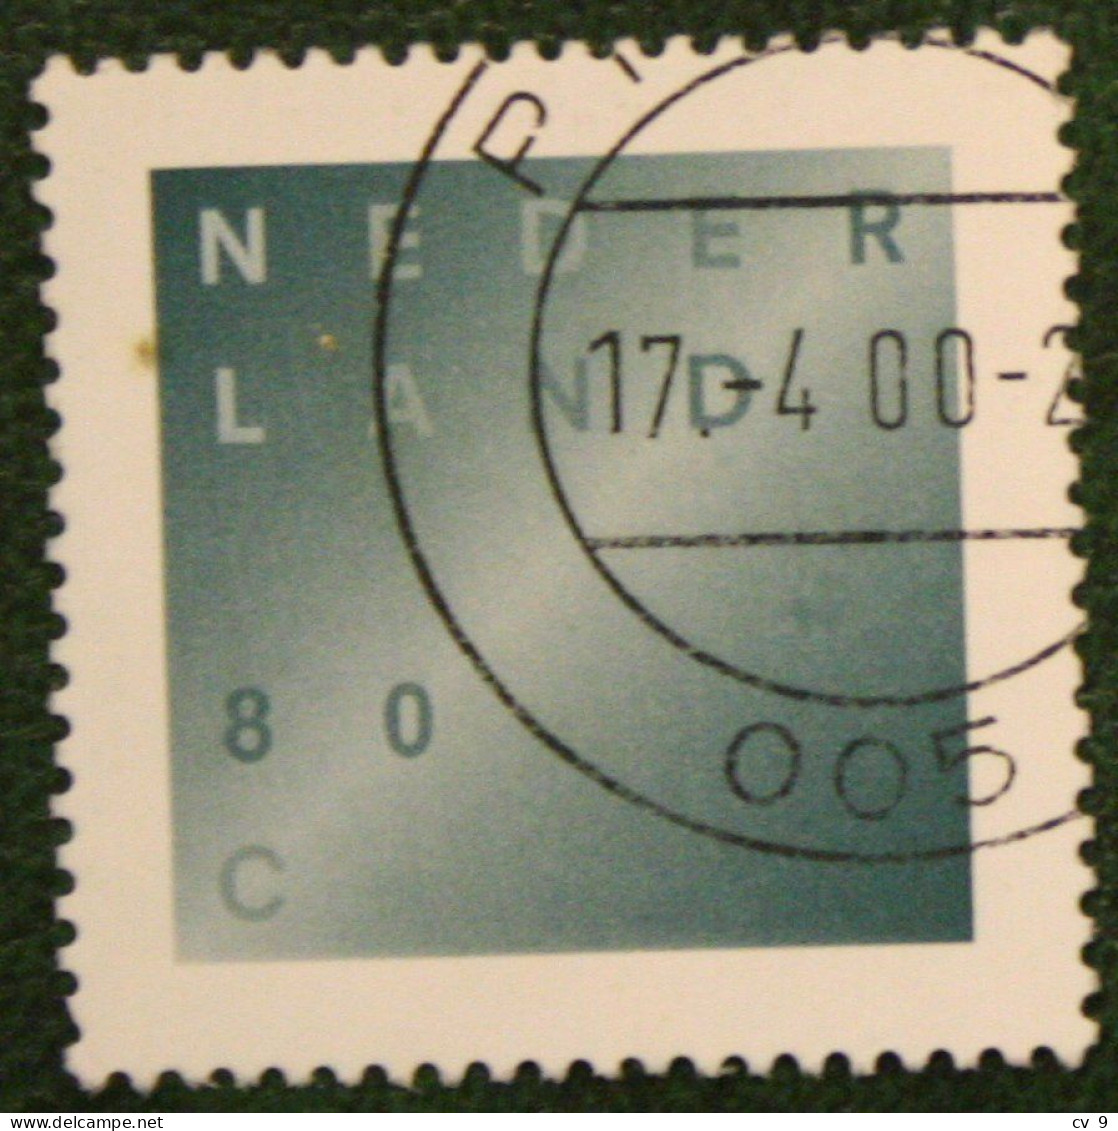 Rouwzegel NVPH 1746 (Mi 1641); 1998 1998 Gestempeld / USED NEDERLAND / NIEDERLANDE - Oblitérés